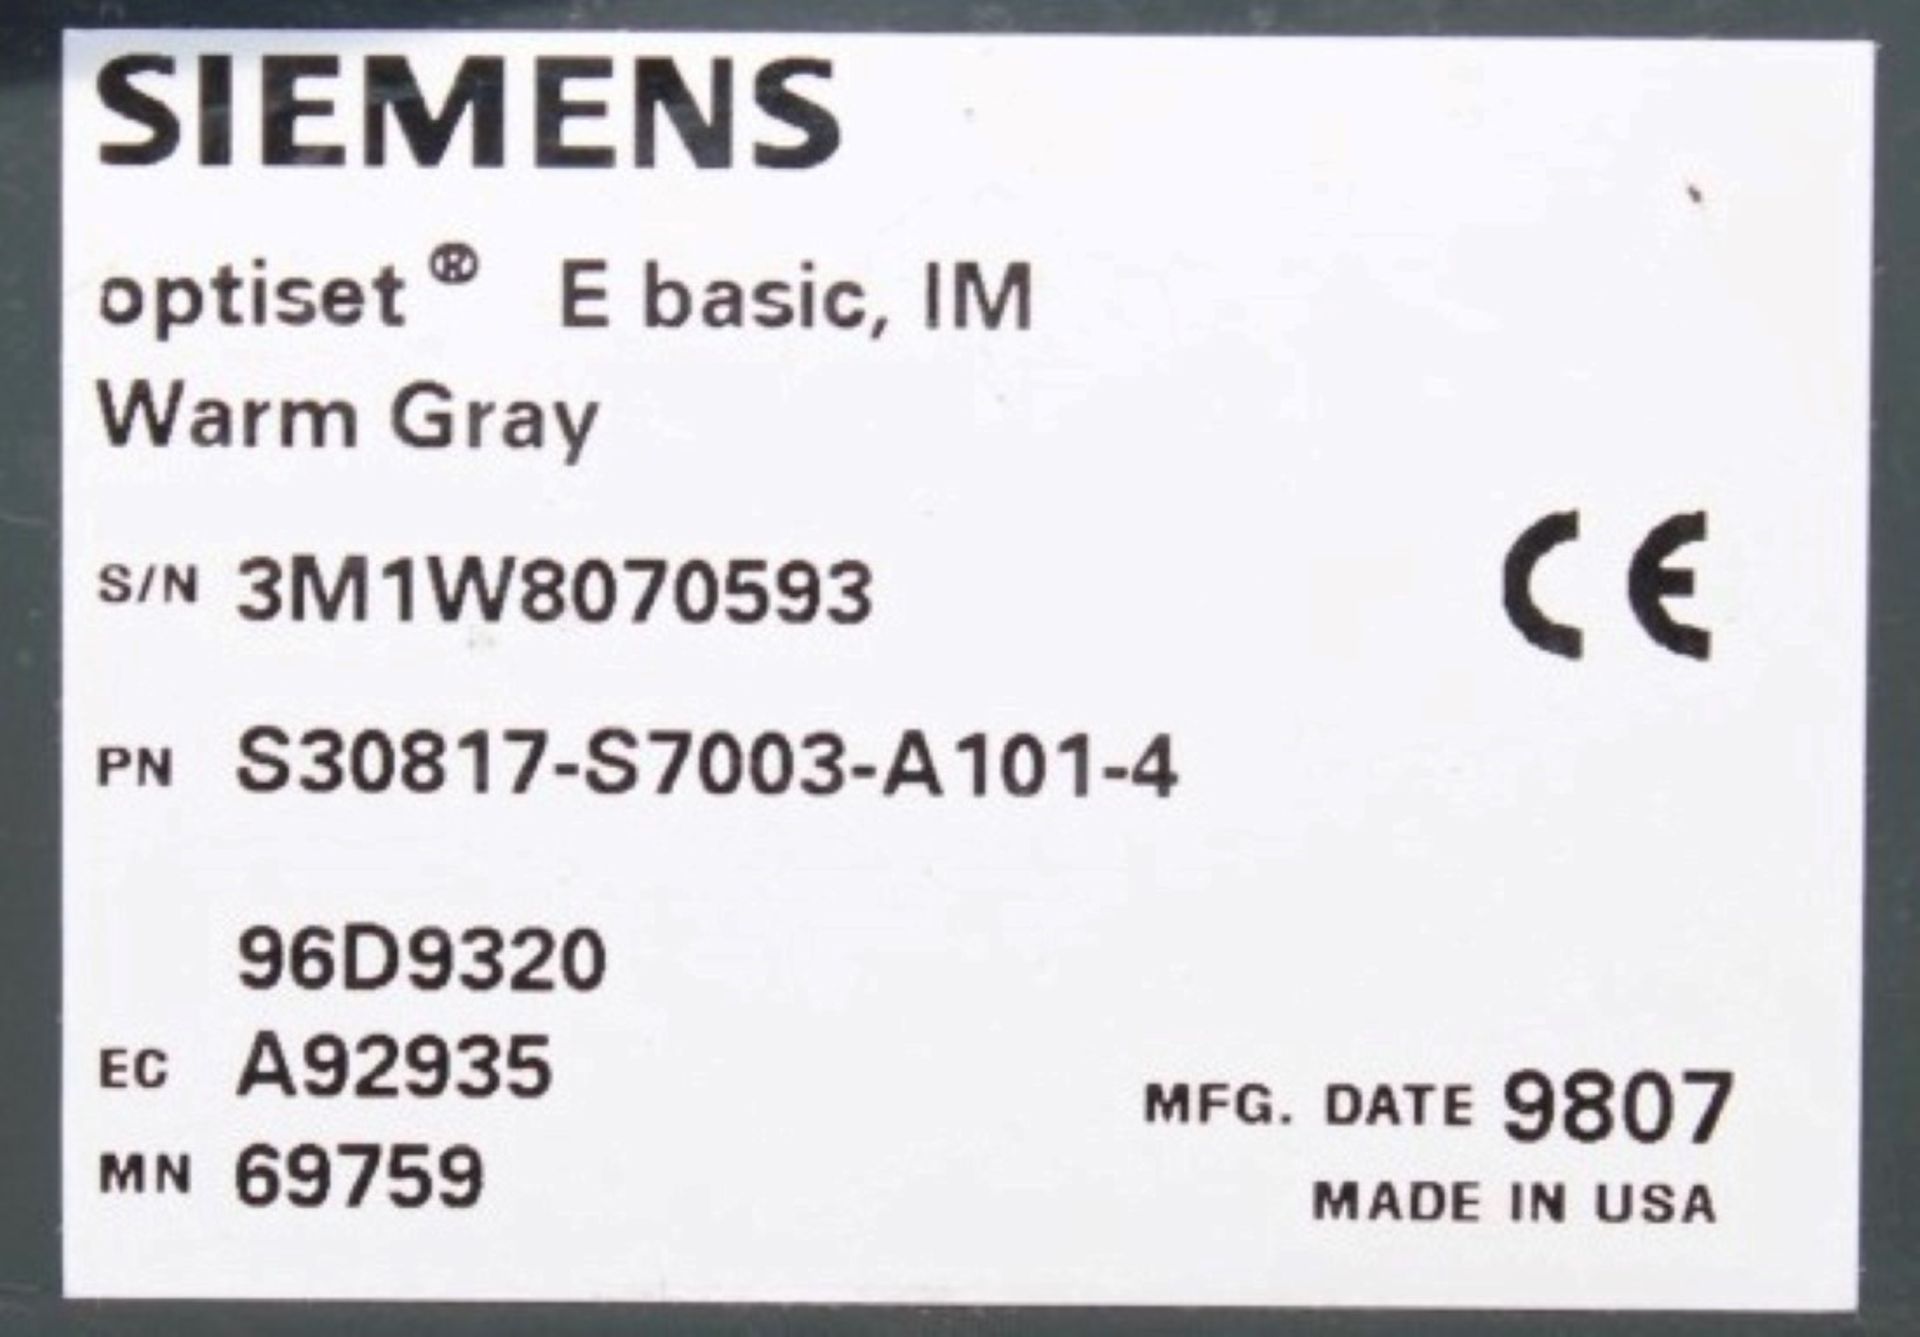 5 x Siemens Office Telephones in White - Models: 4 x Optiset E Basic & 1 x Optiset Entry Phone - All - Image 2 of 3